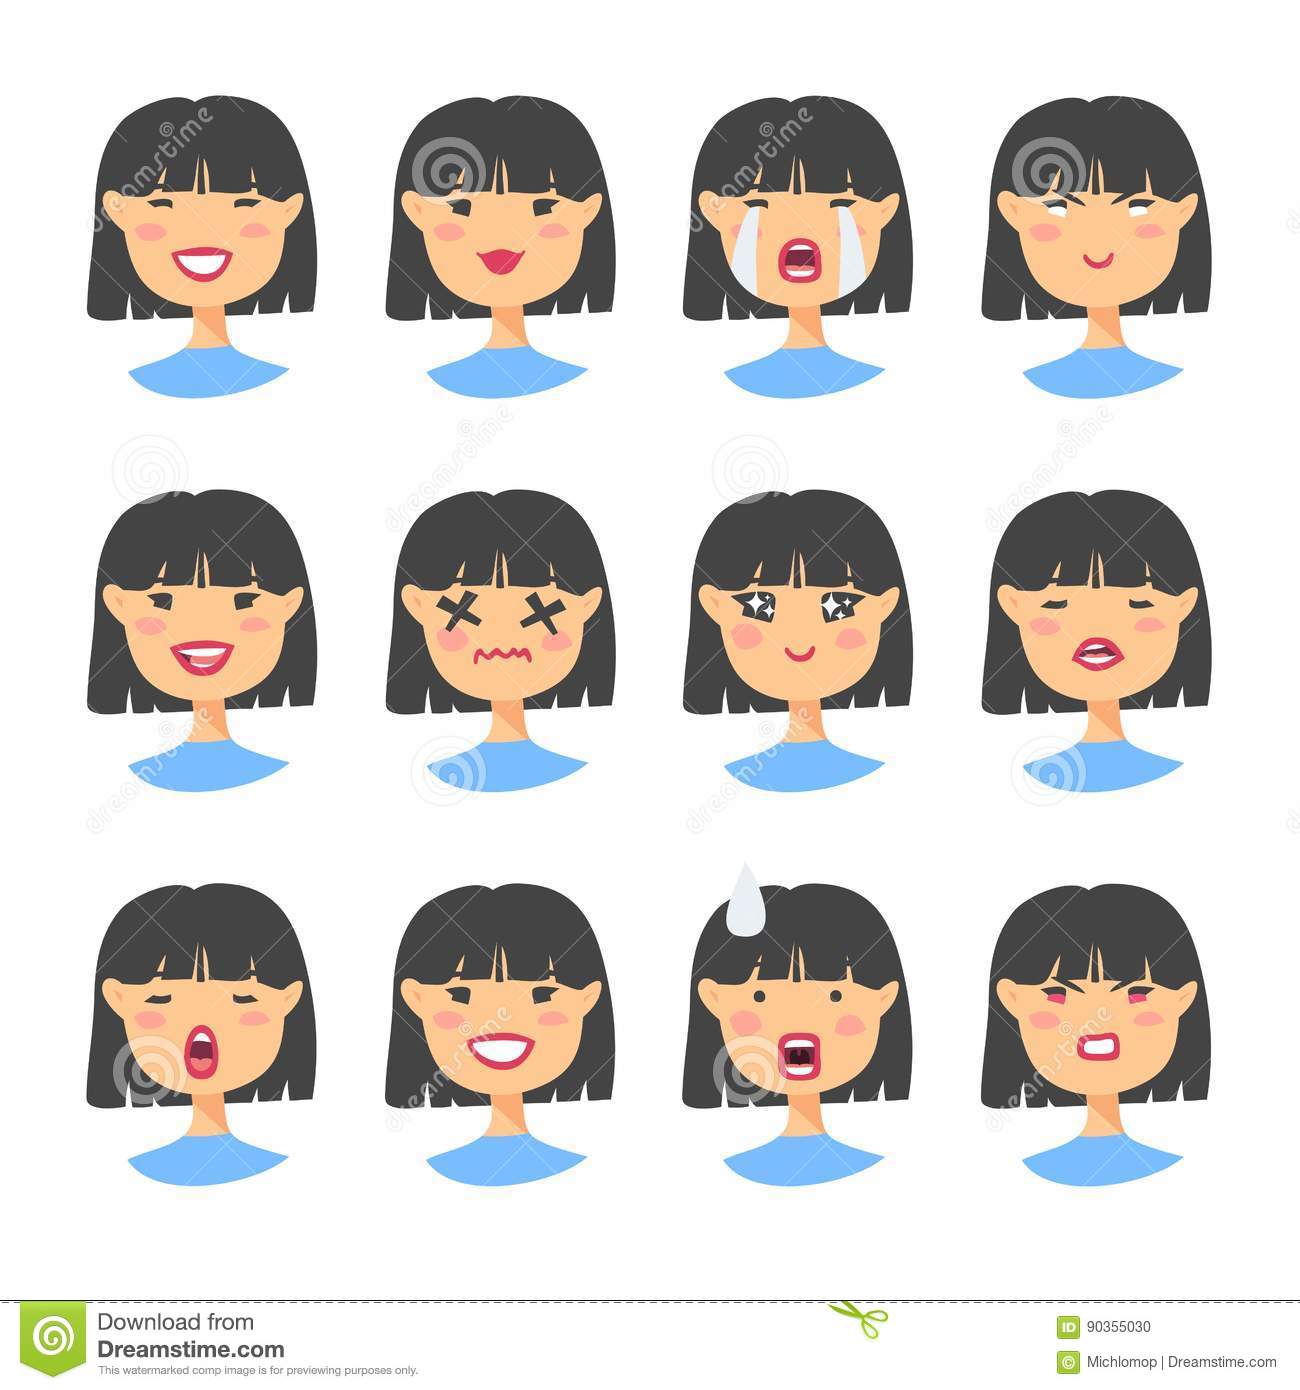 Defense reccomend Asian girl avatars